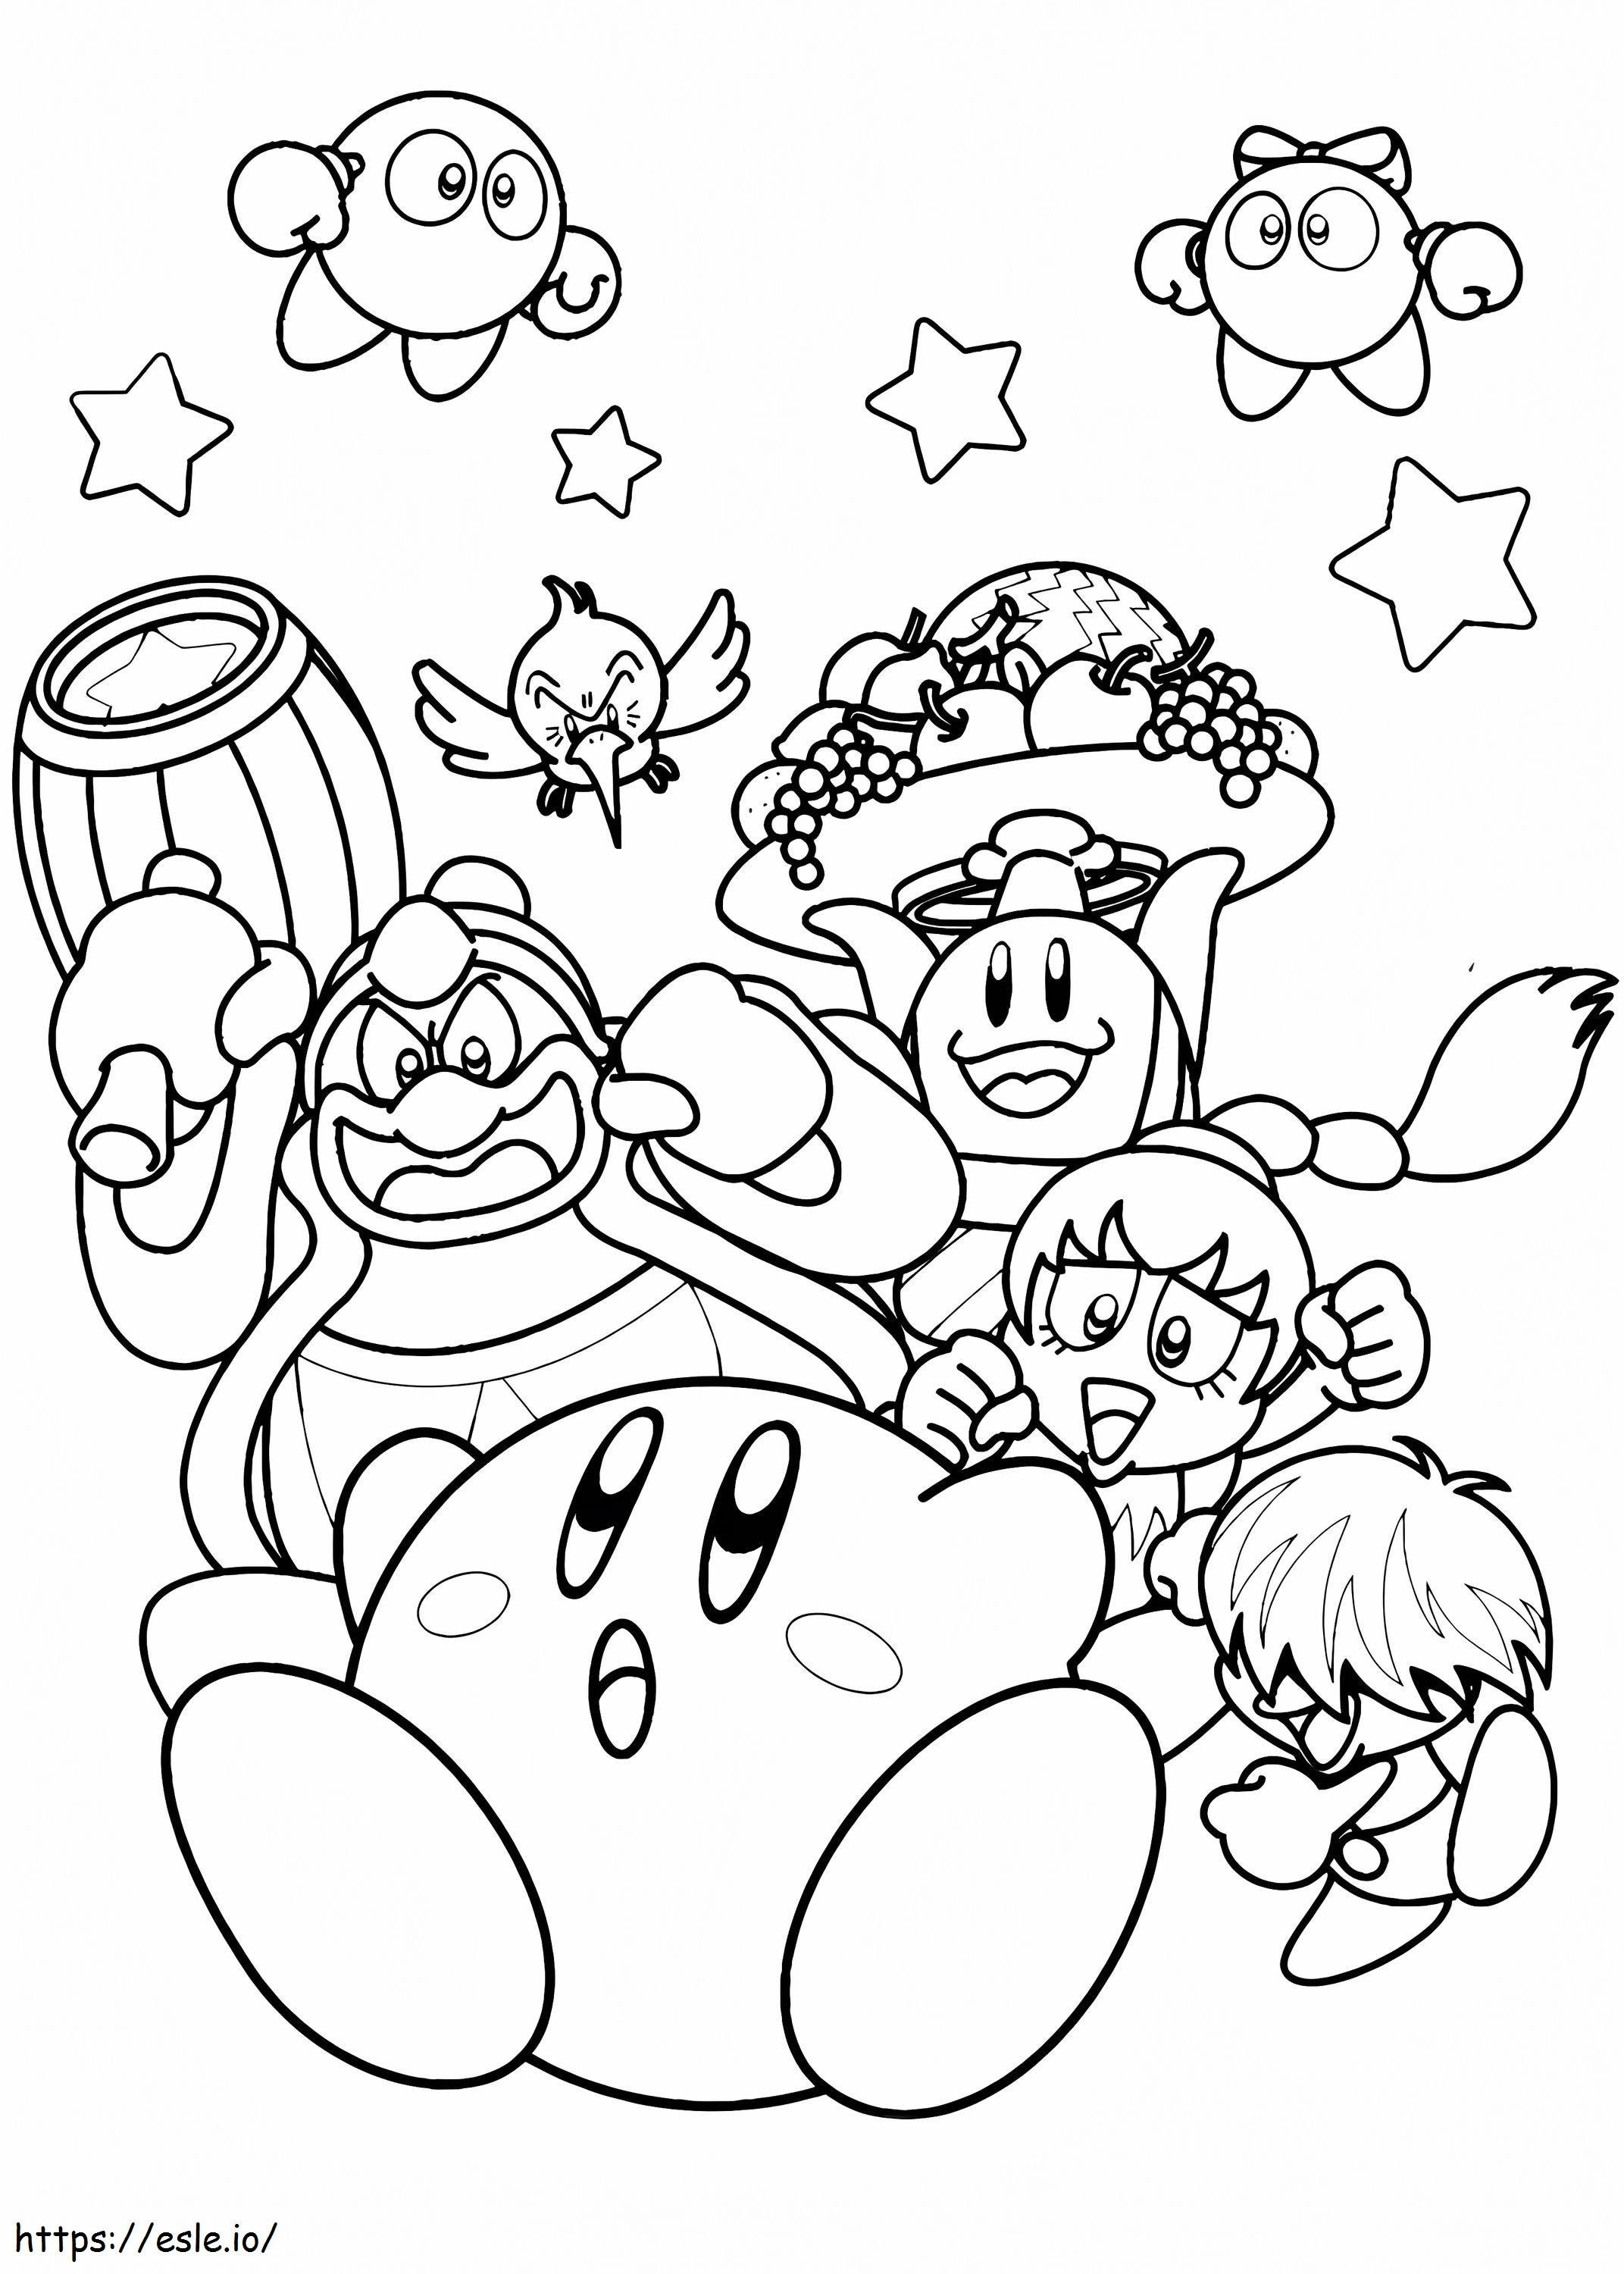 1575687546 Nintendo-Kirby kleurplaat kleurplaat